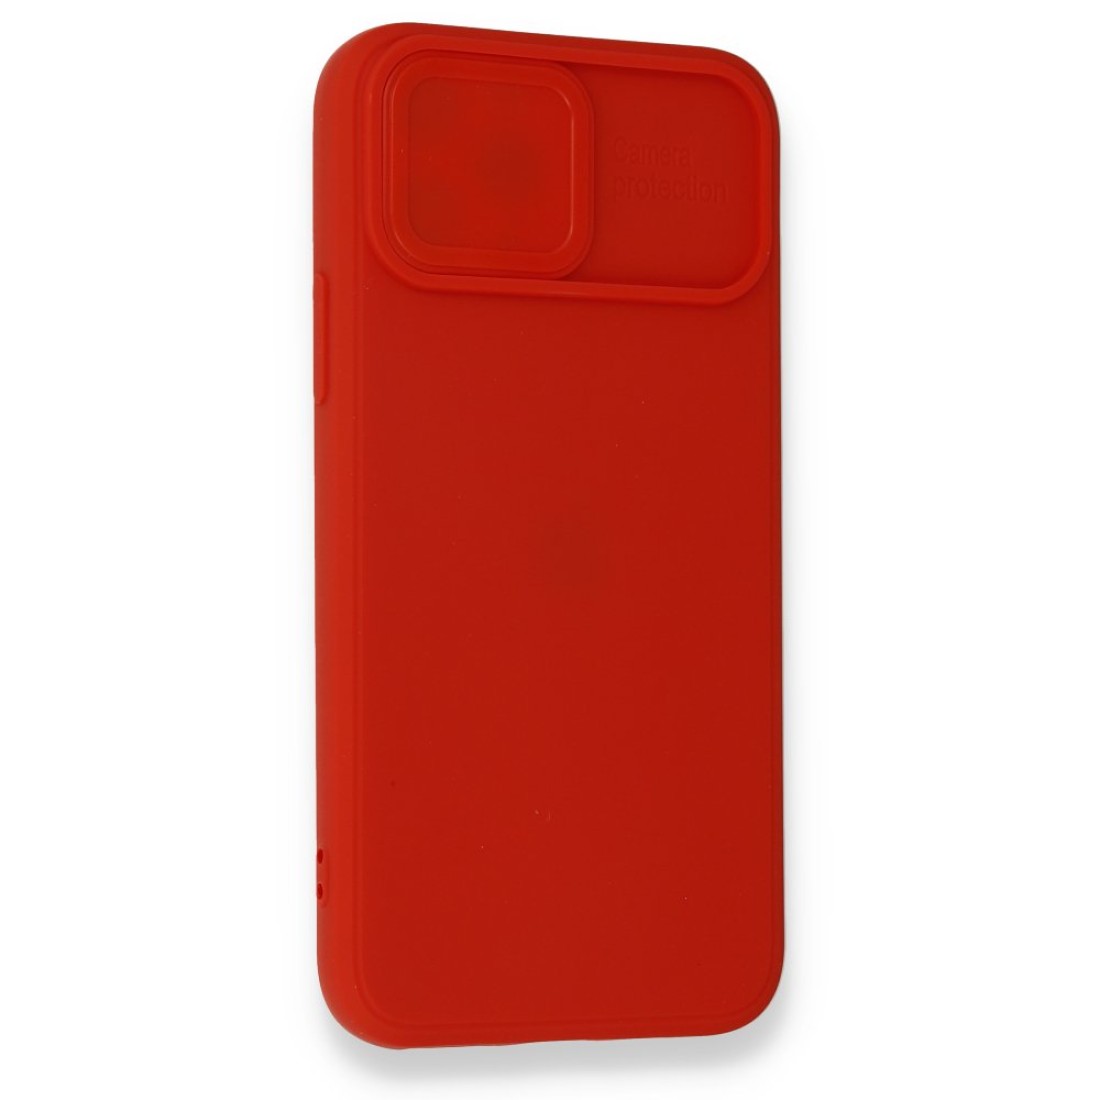 Apple iPhone 11 Pro Kılıf Color Lens Silikon - Kırmızı